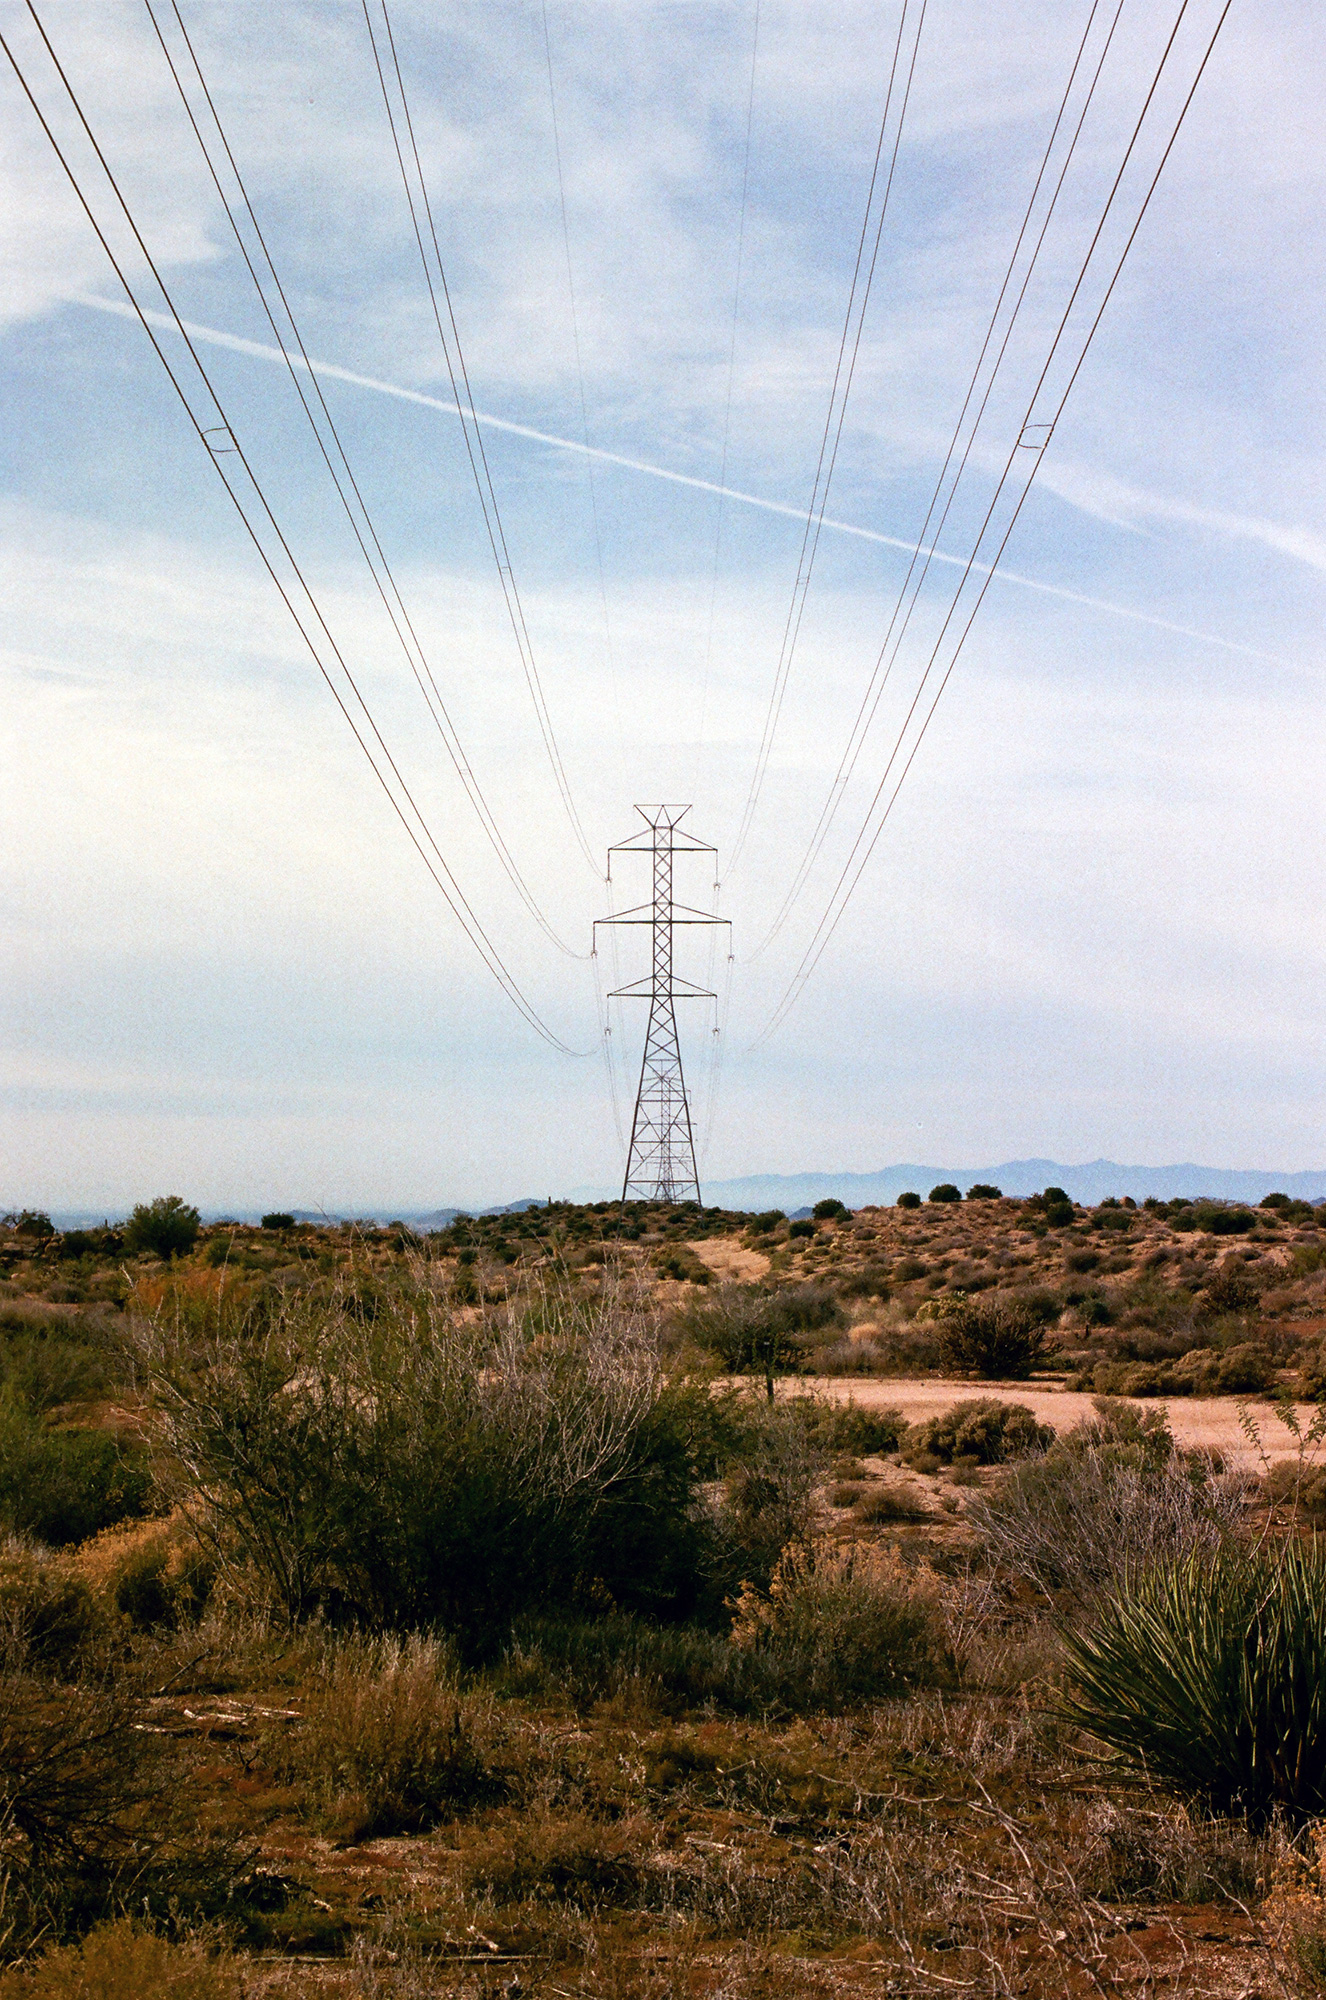 A lone power array cuts through the barren desert.